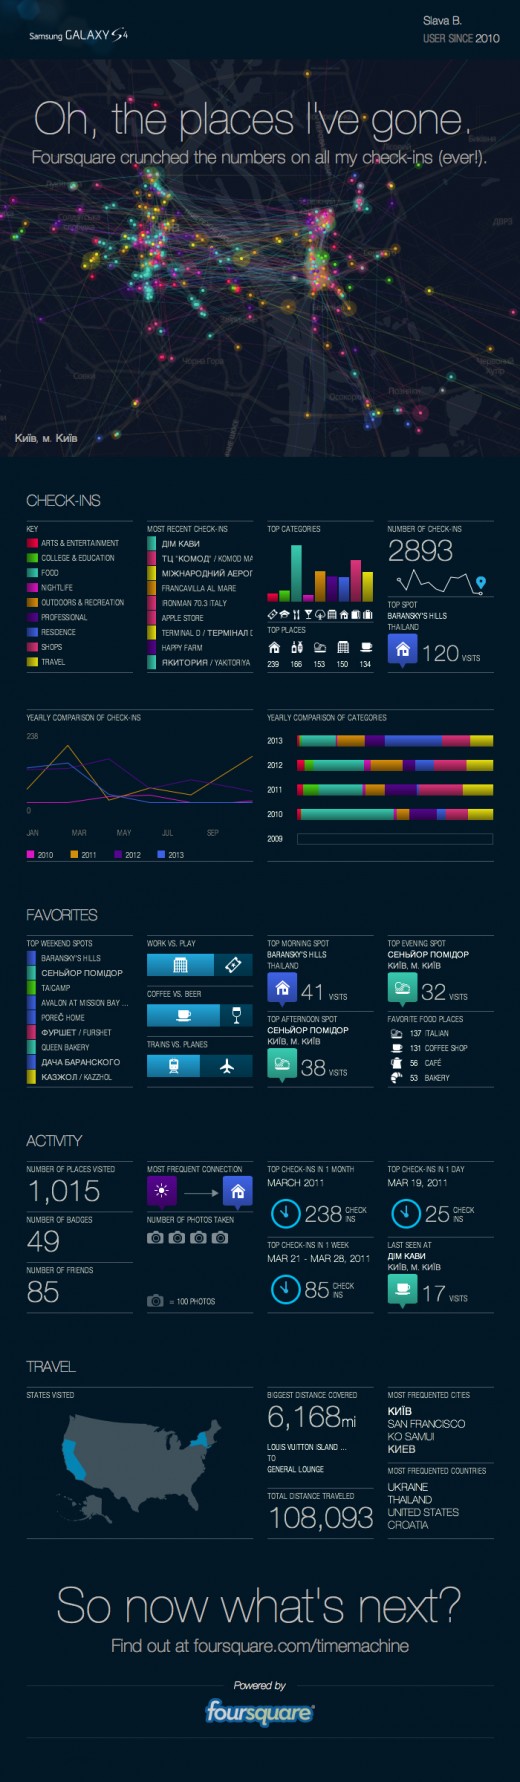 Инфографика о перемещениях в Foursquare